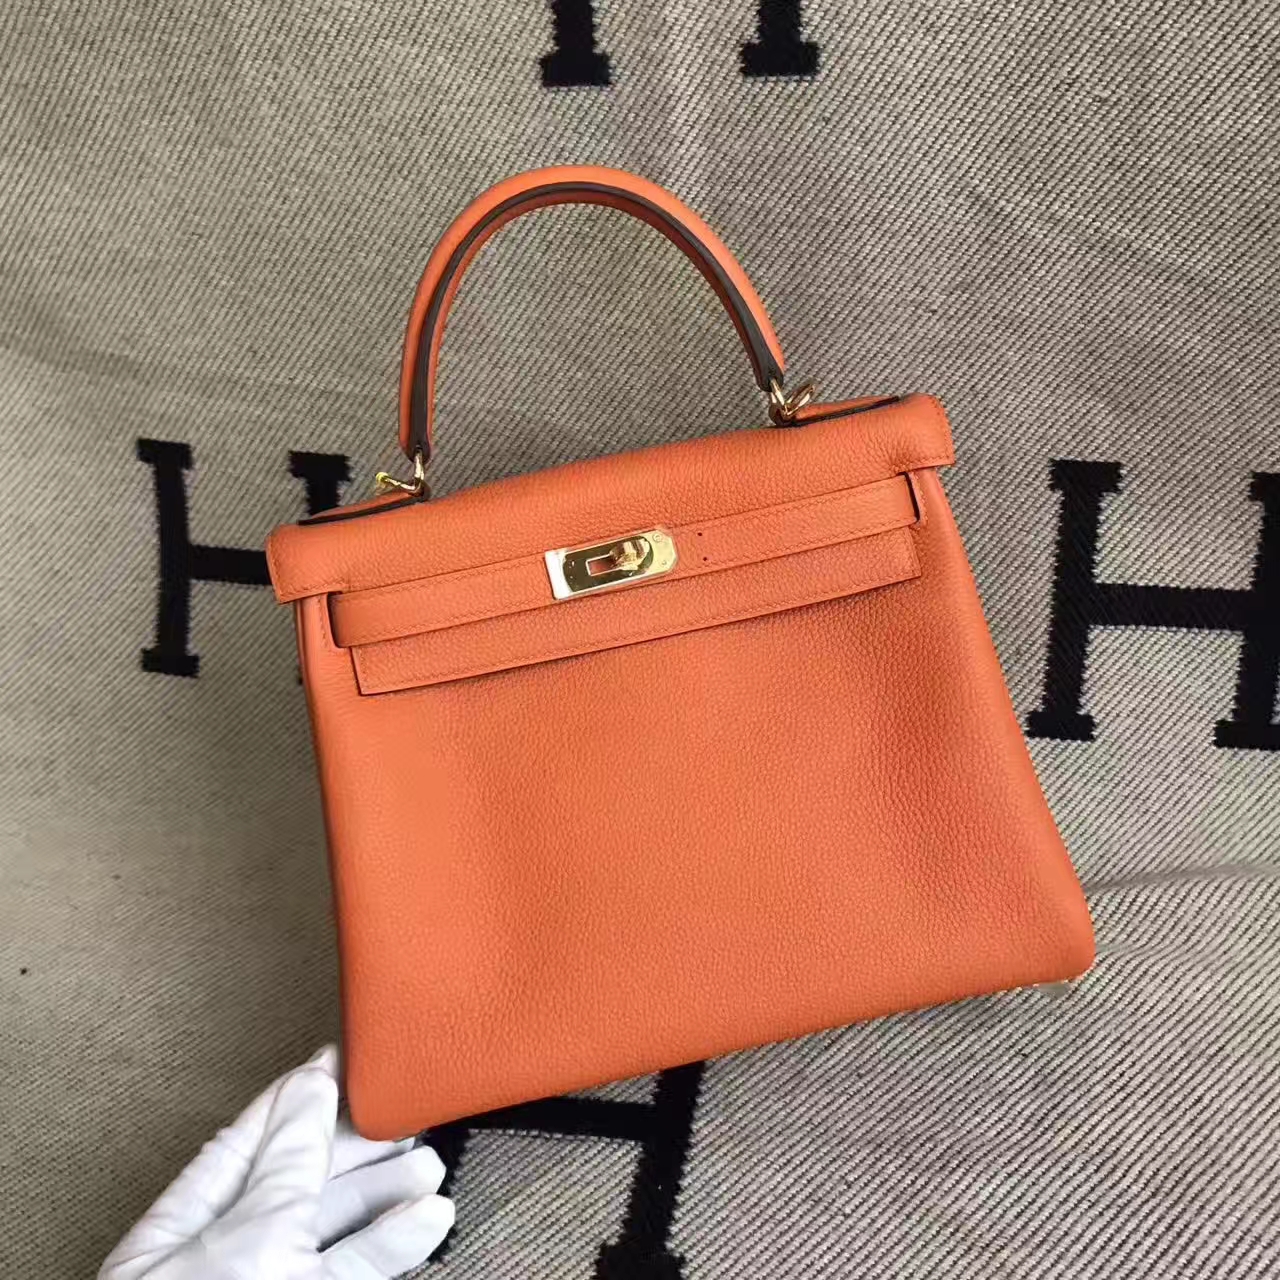 Discount Hermes 93 Orange Togo Calfskin Leather Retourne Kelly Bag 28CM ...